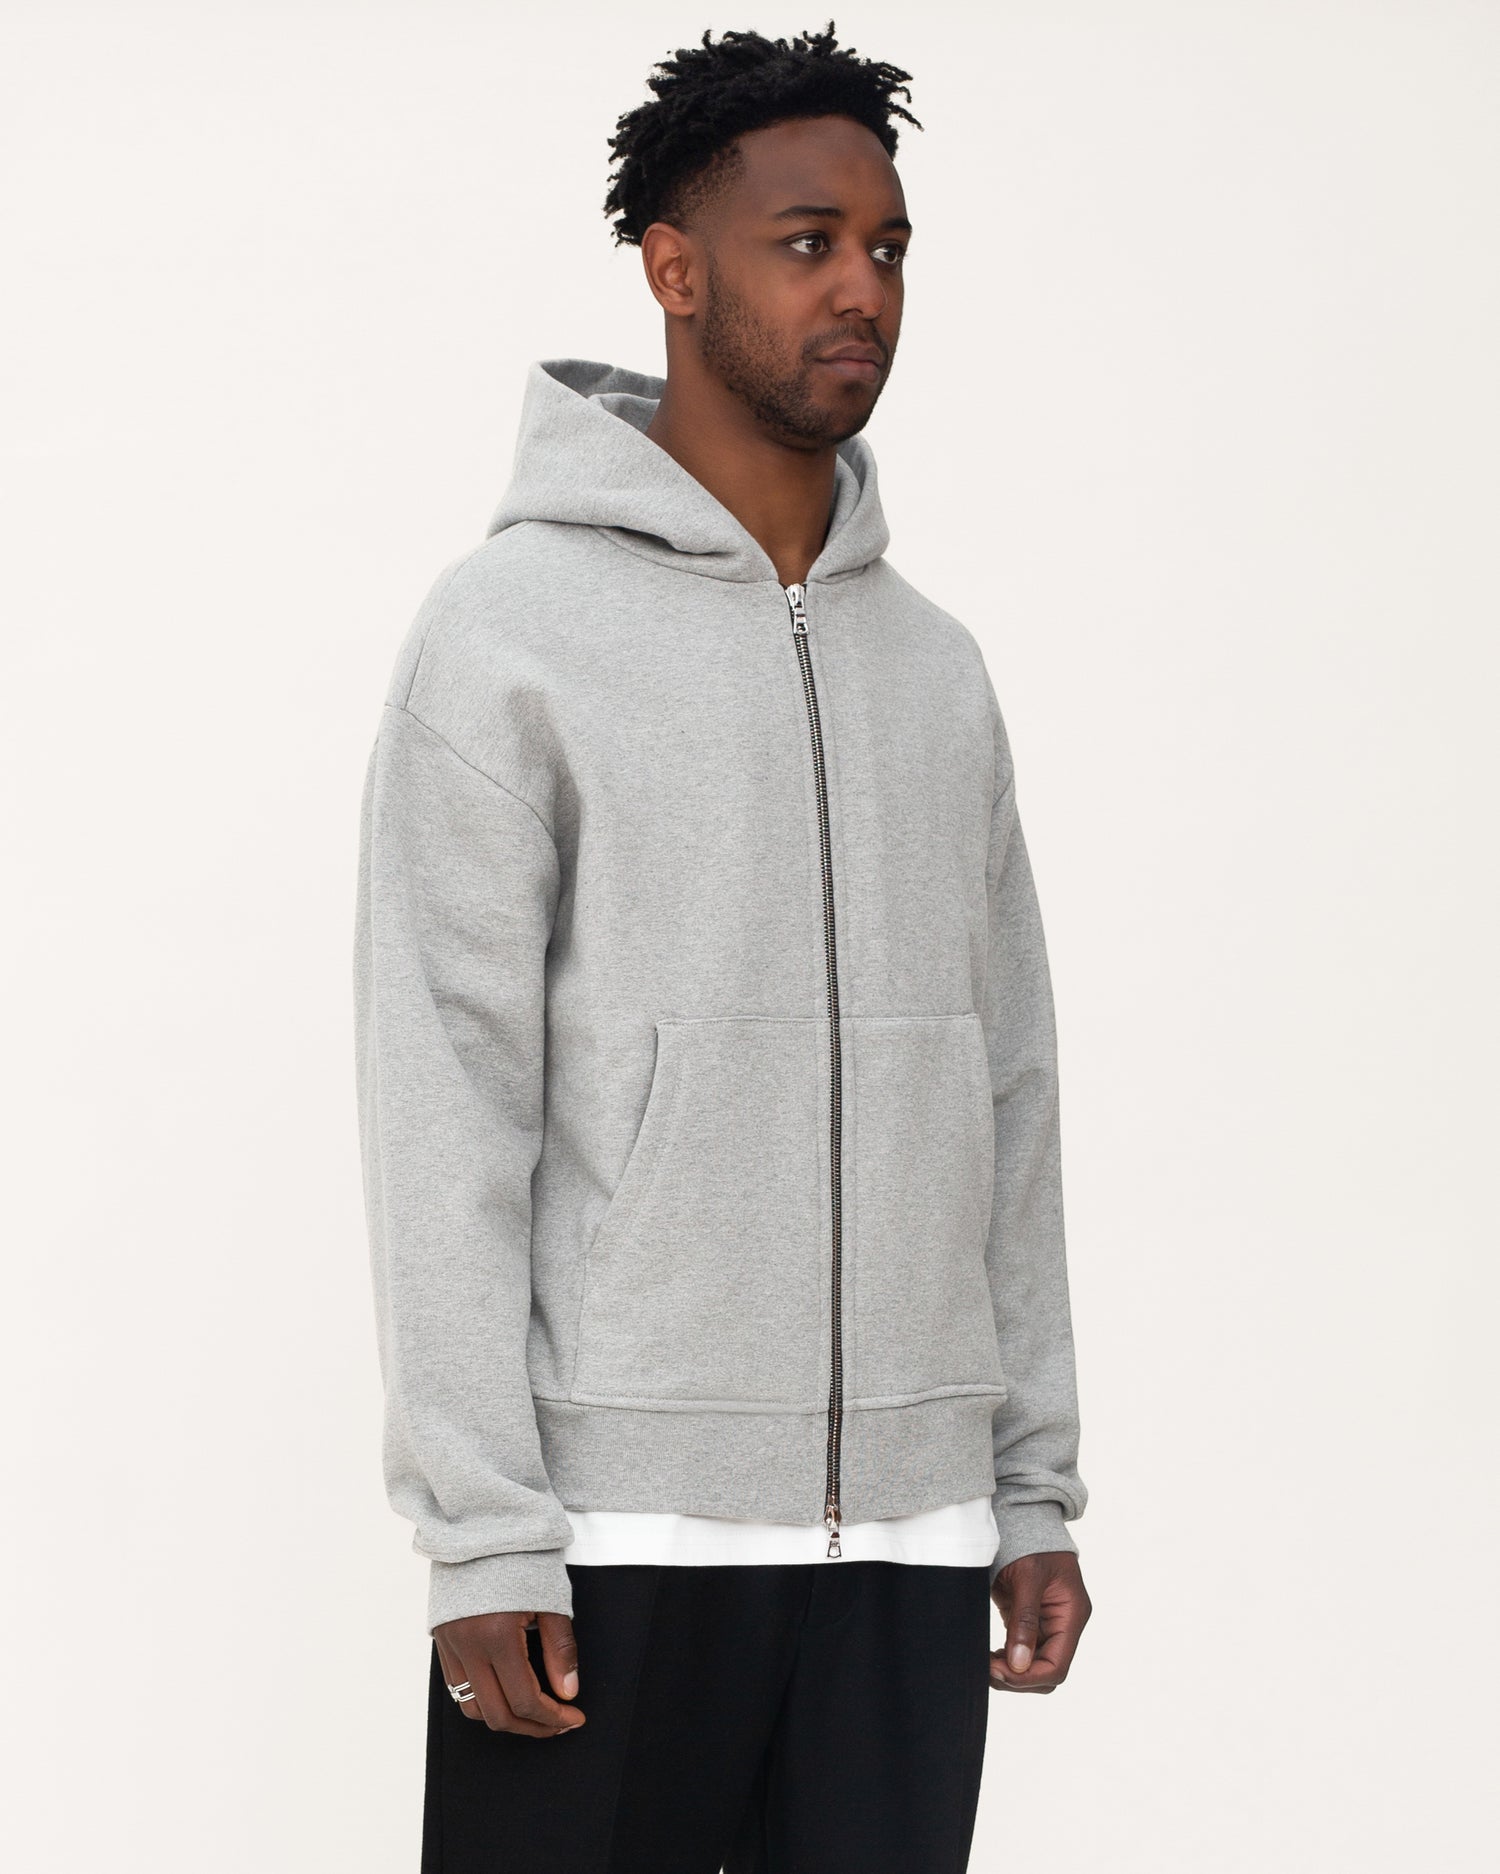 zip up hoodies, grey hoodie, mens hoodie, angle side